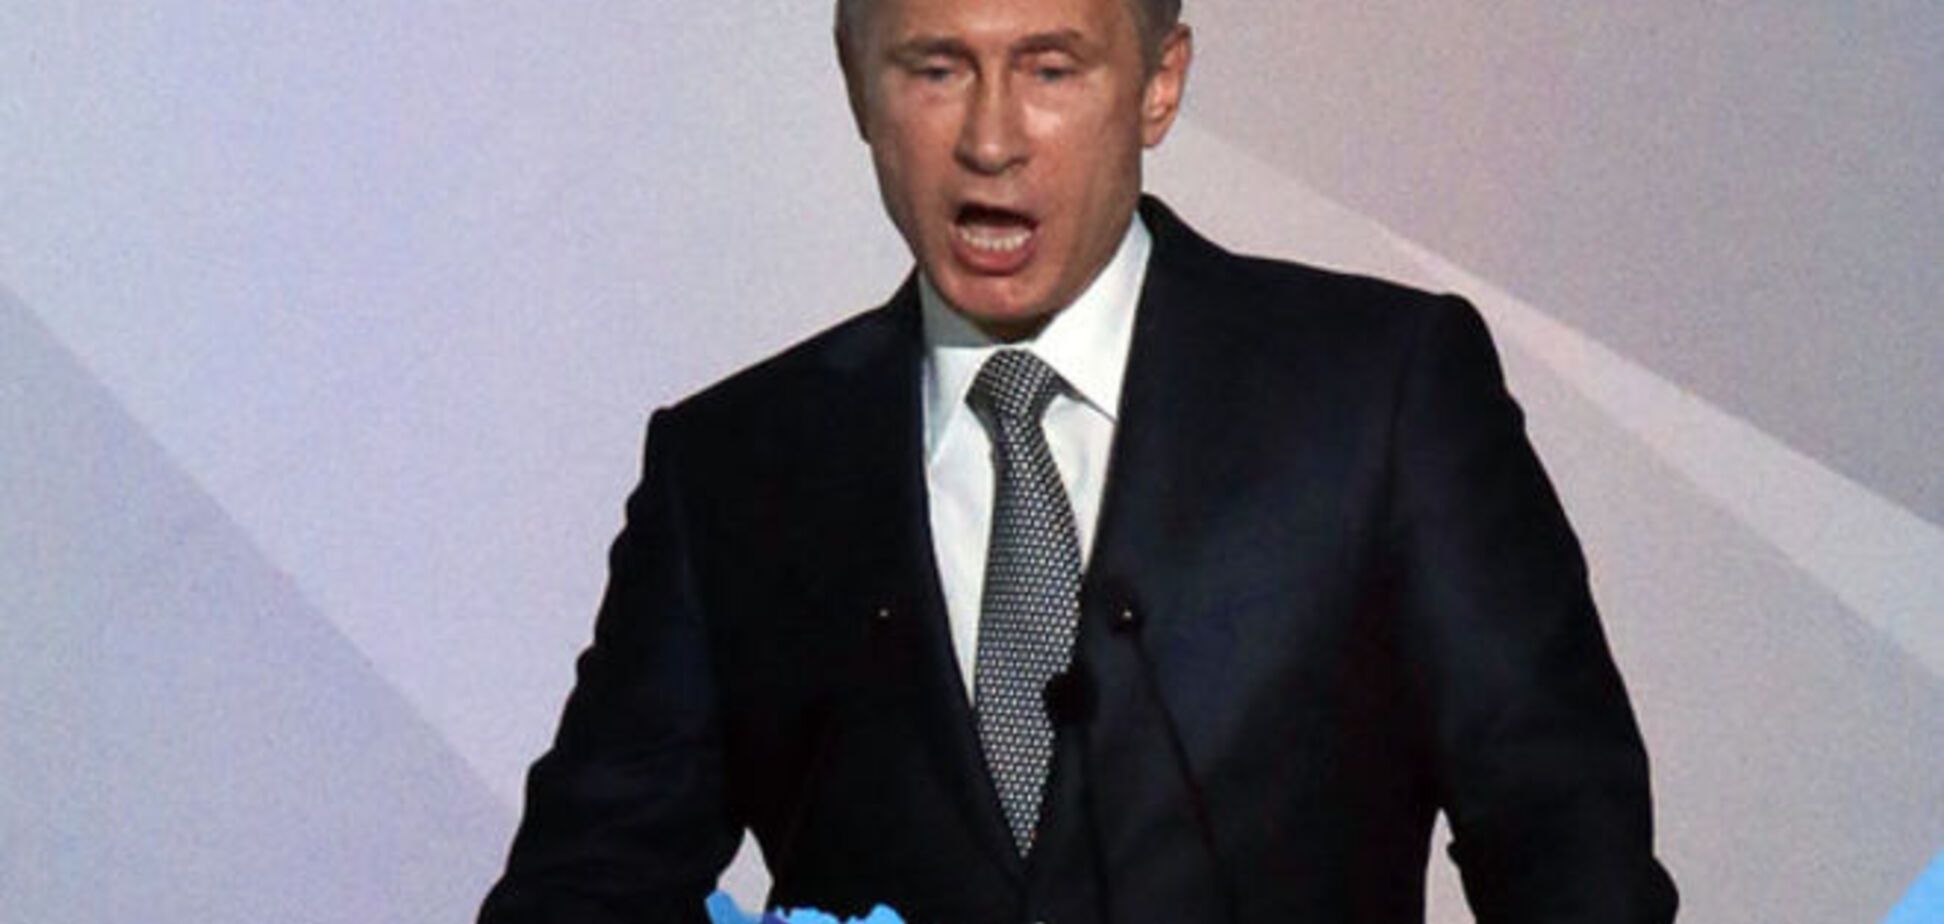 Закручивая гайки в России, Путин показал слабость своего режима – WP 